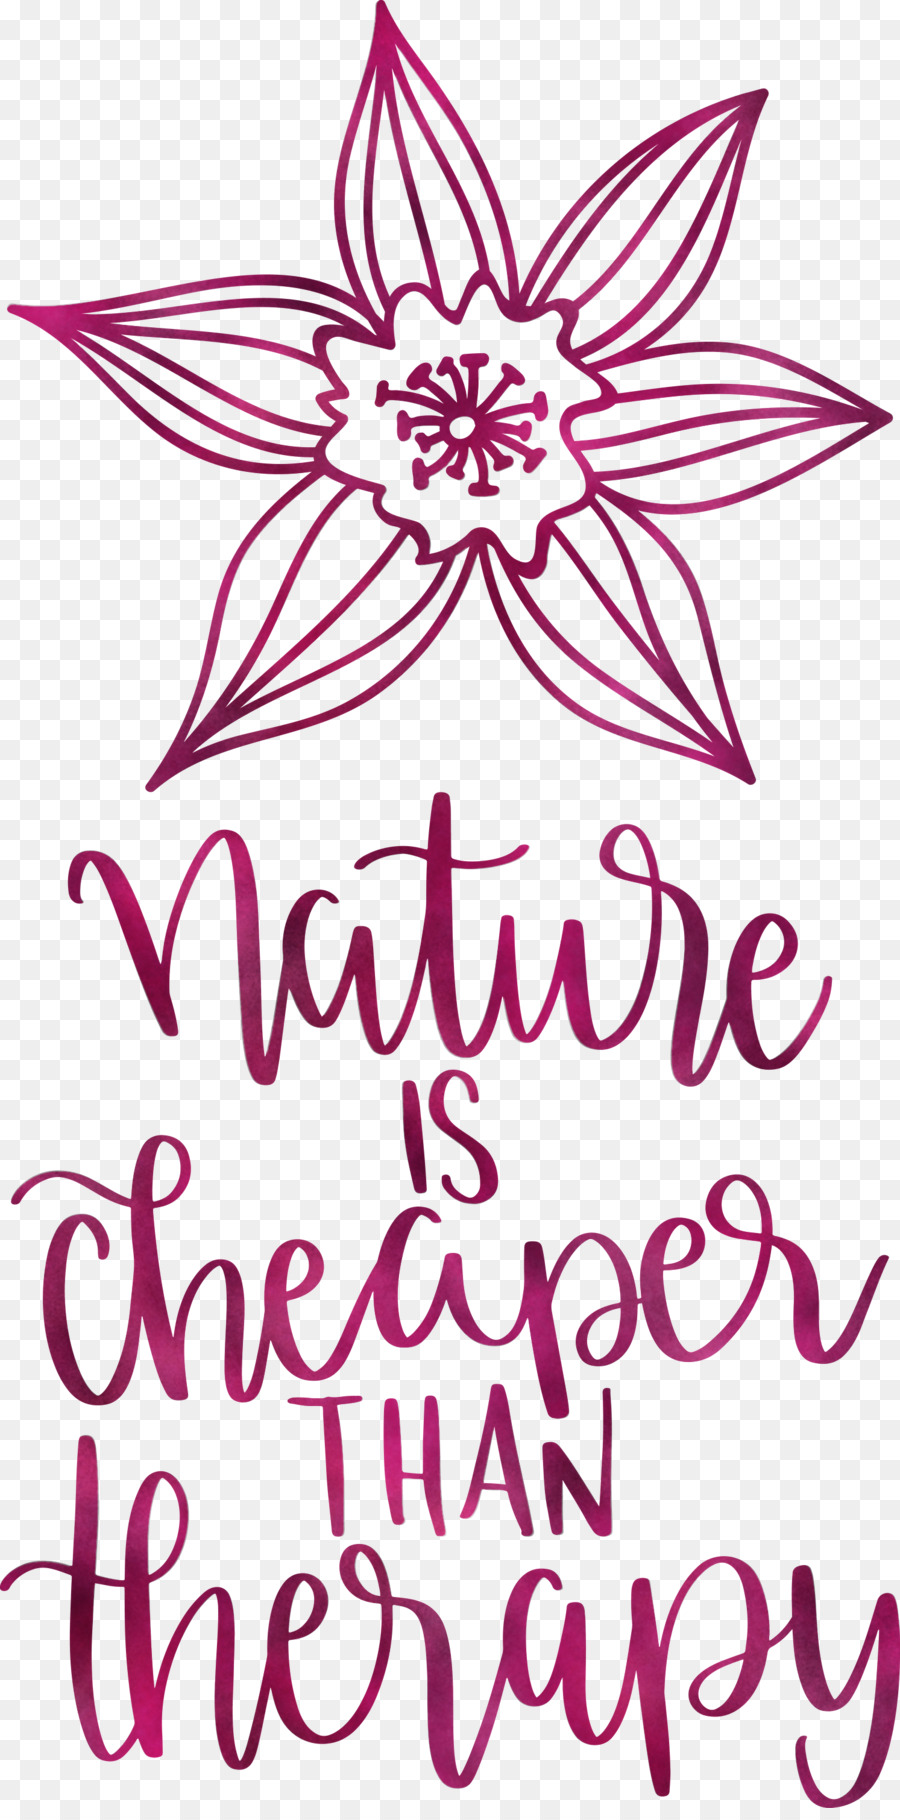 Natur ist billiger als Therapie Natur - 